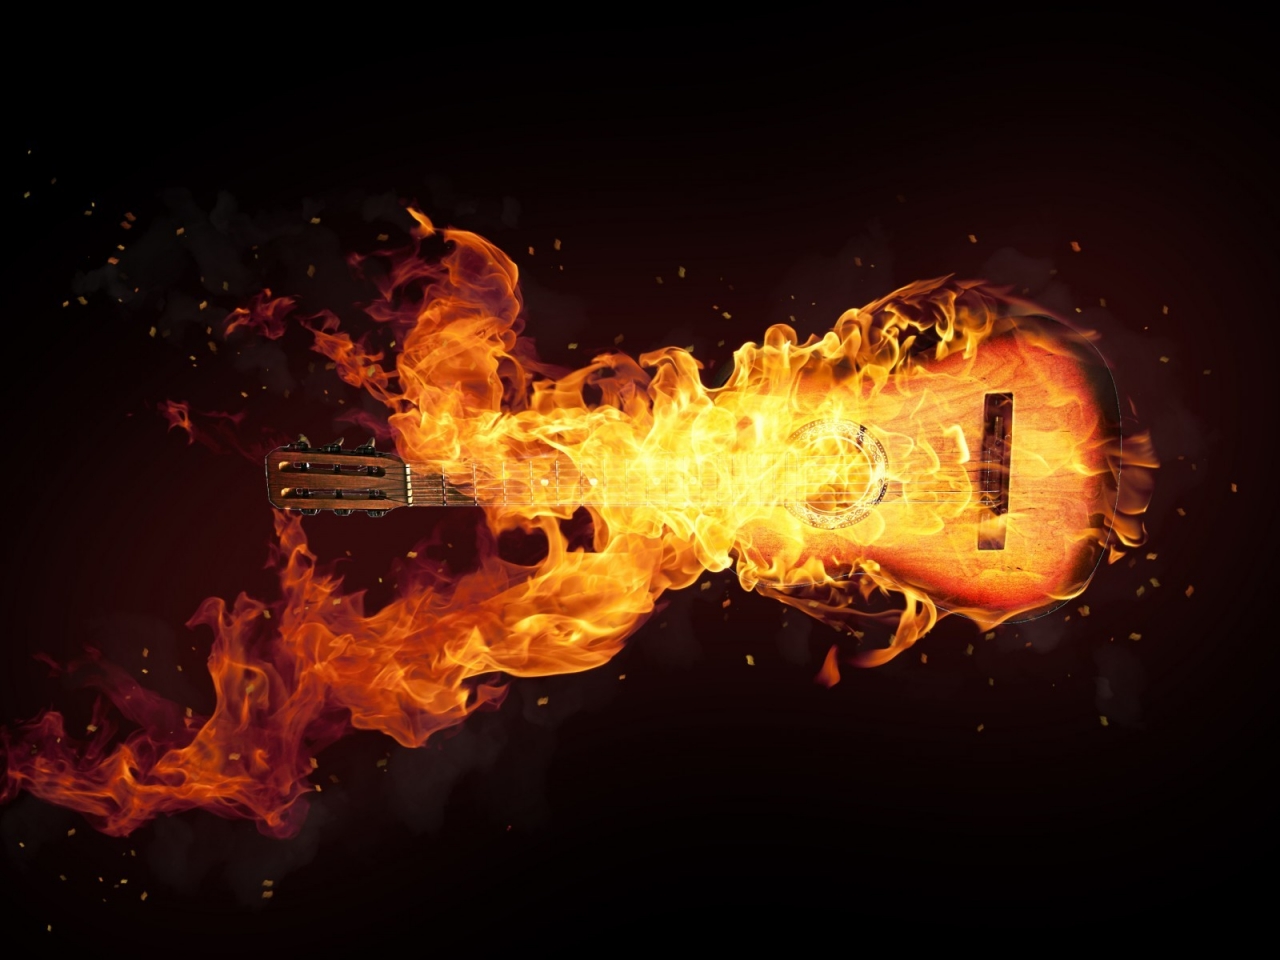 Fire Guitar Art for 1280 x 960 resolution